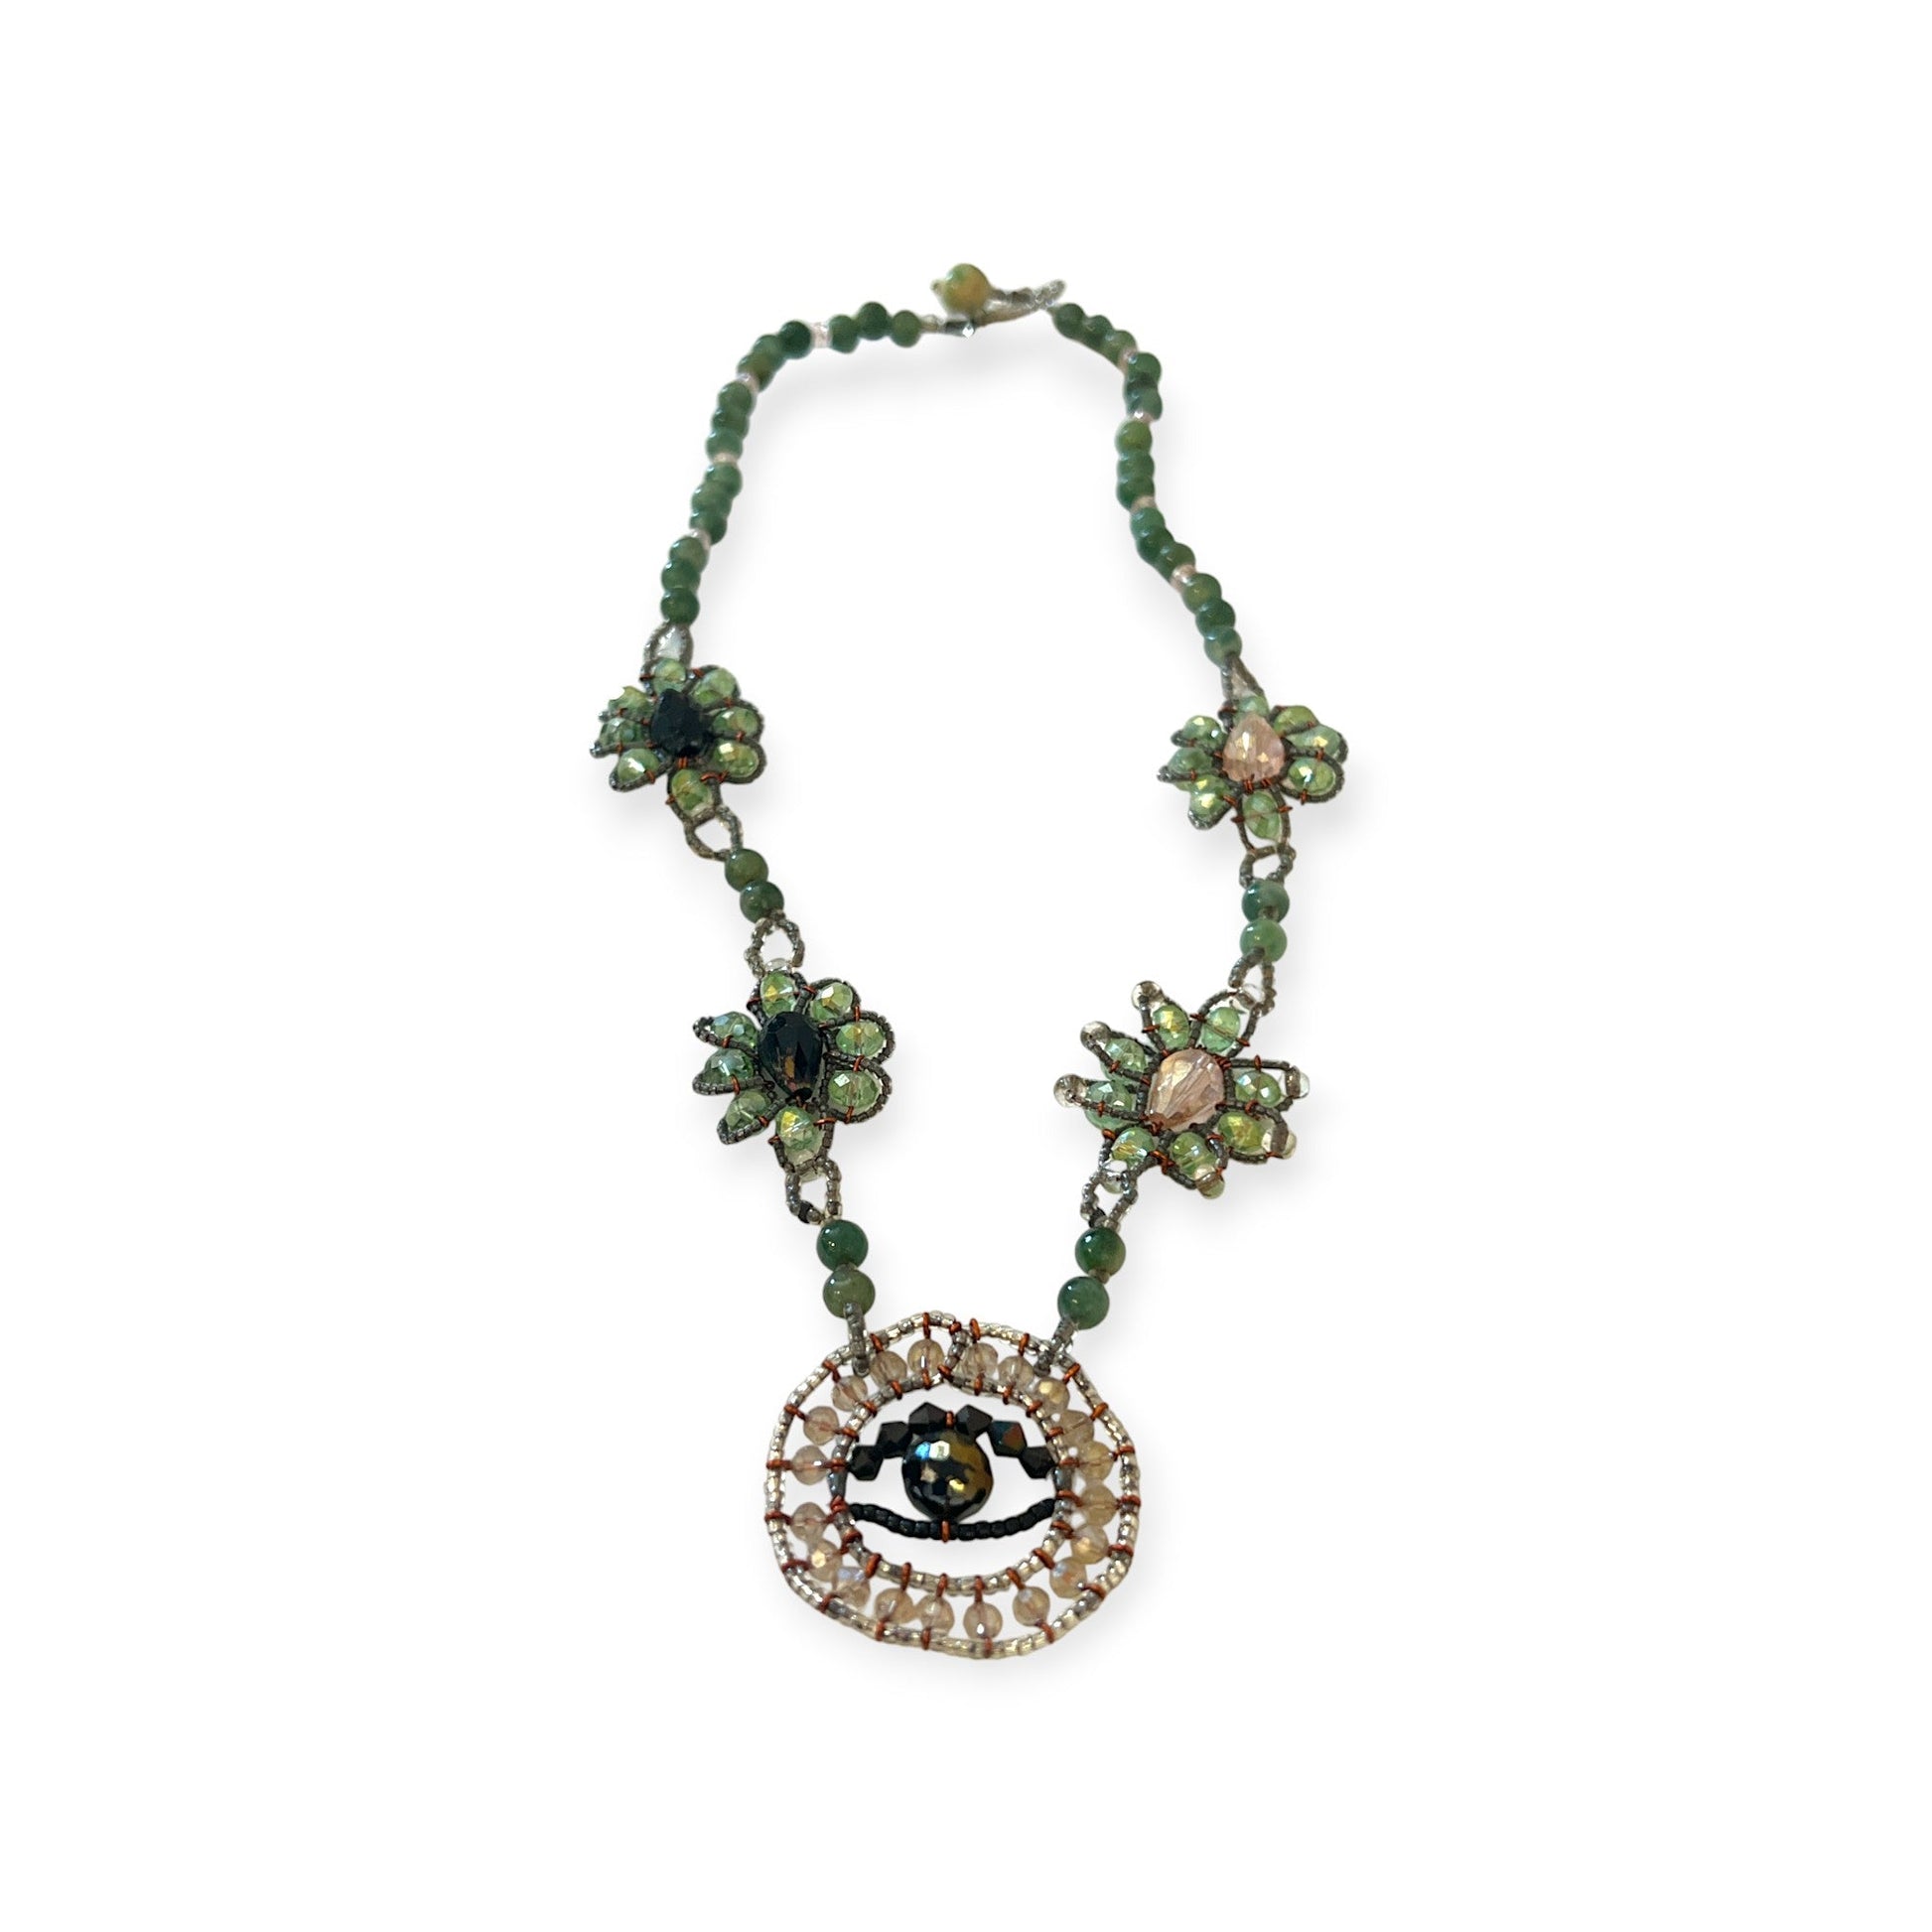 Evil eye jade necklace with crystals for a unique look - Sundara Joon